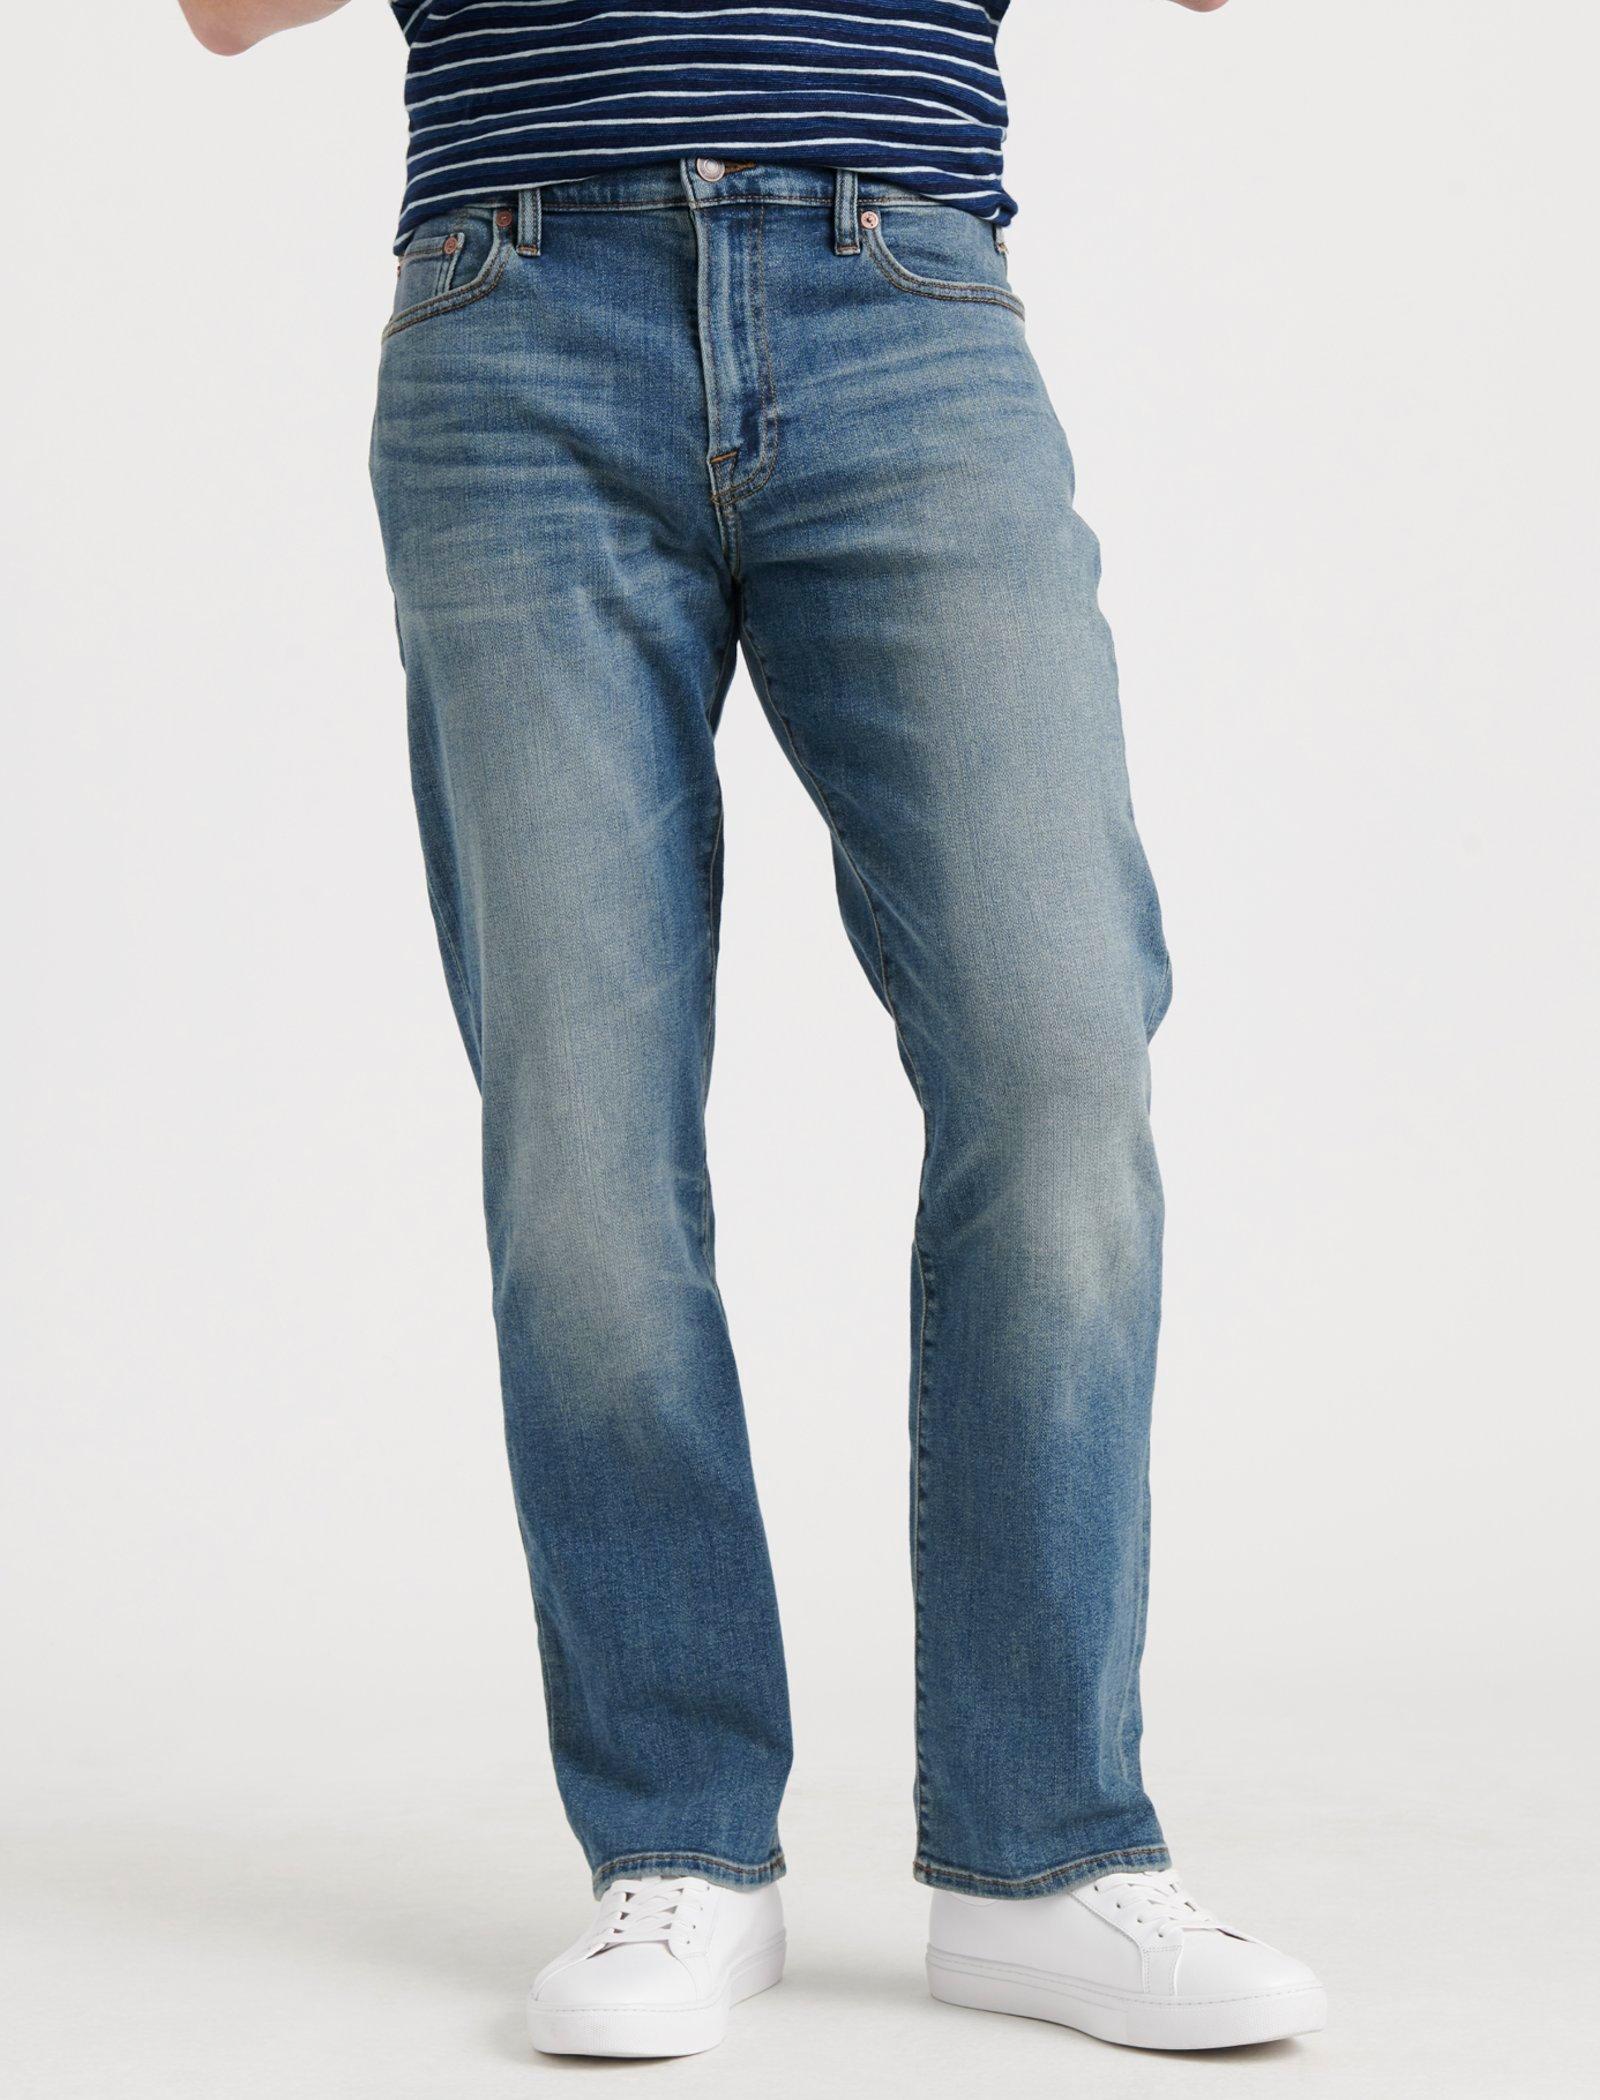 vintage straight jeans